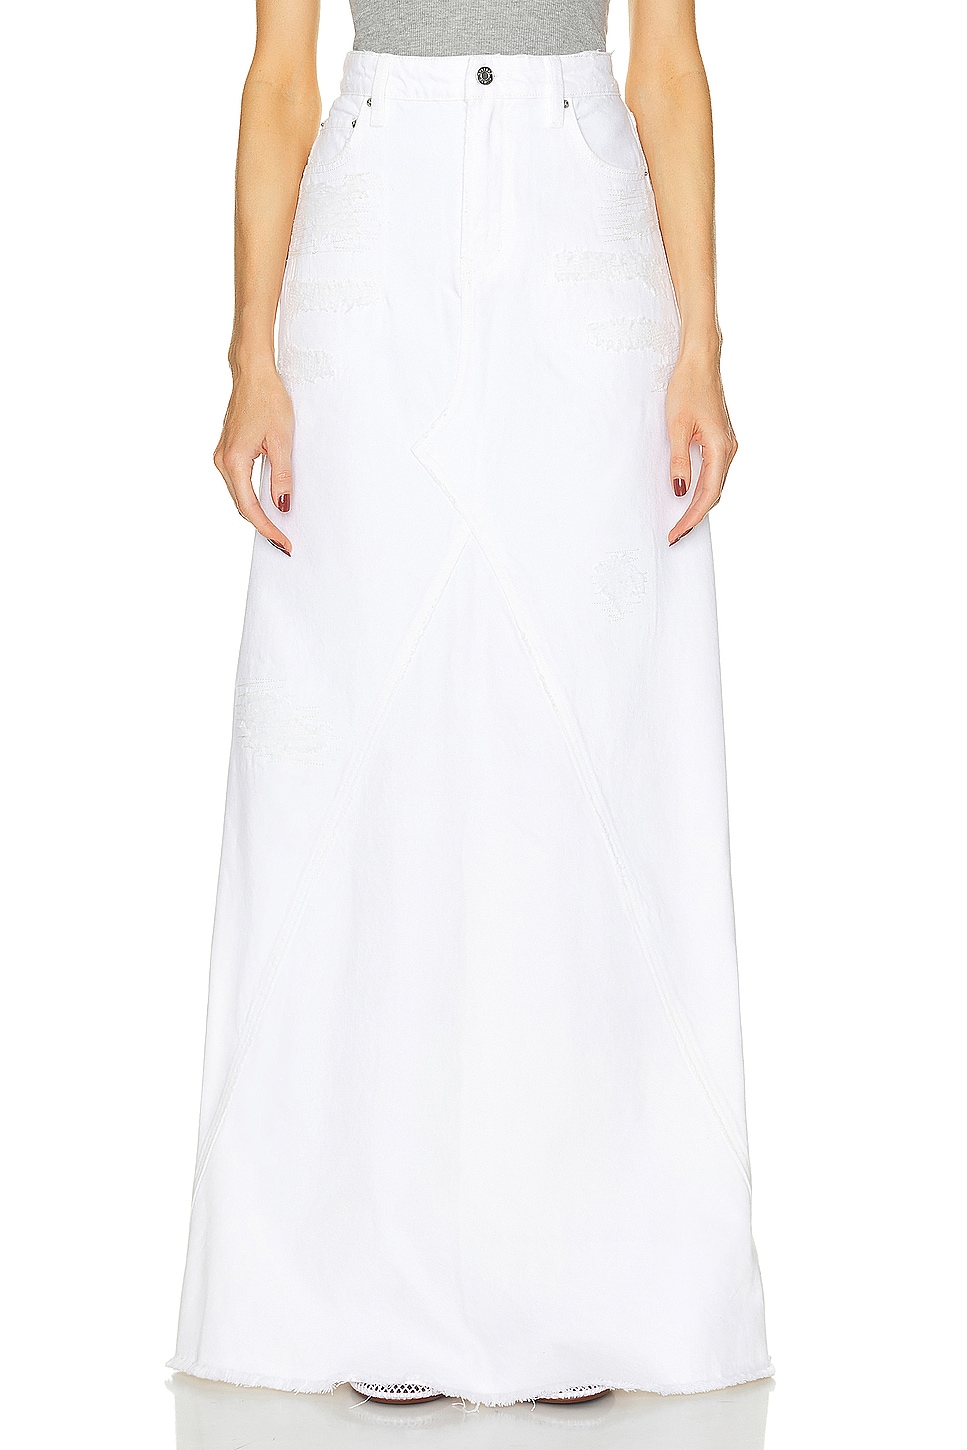 Image 1 of GRLFRND Fiona Godet Maxi Skirt in White Rip